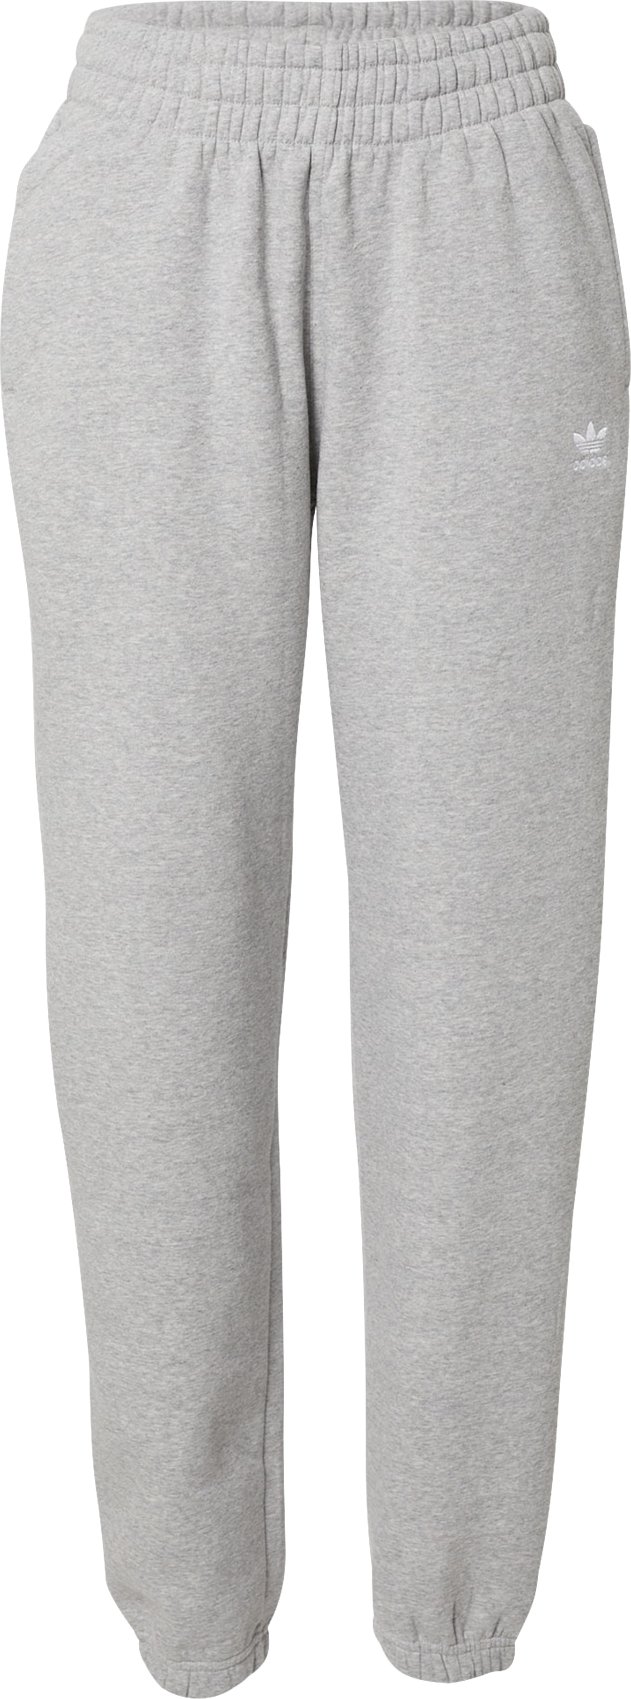 ADIDAS ORIGINALS Sportovní kalhoty šedý melír